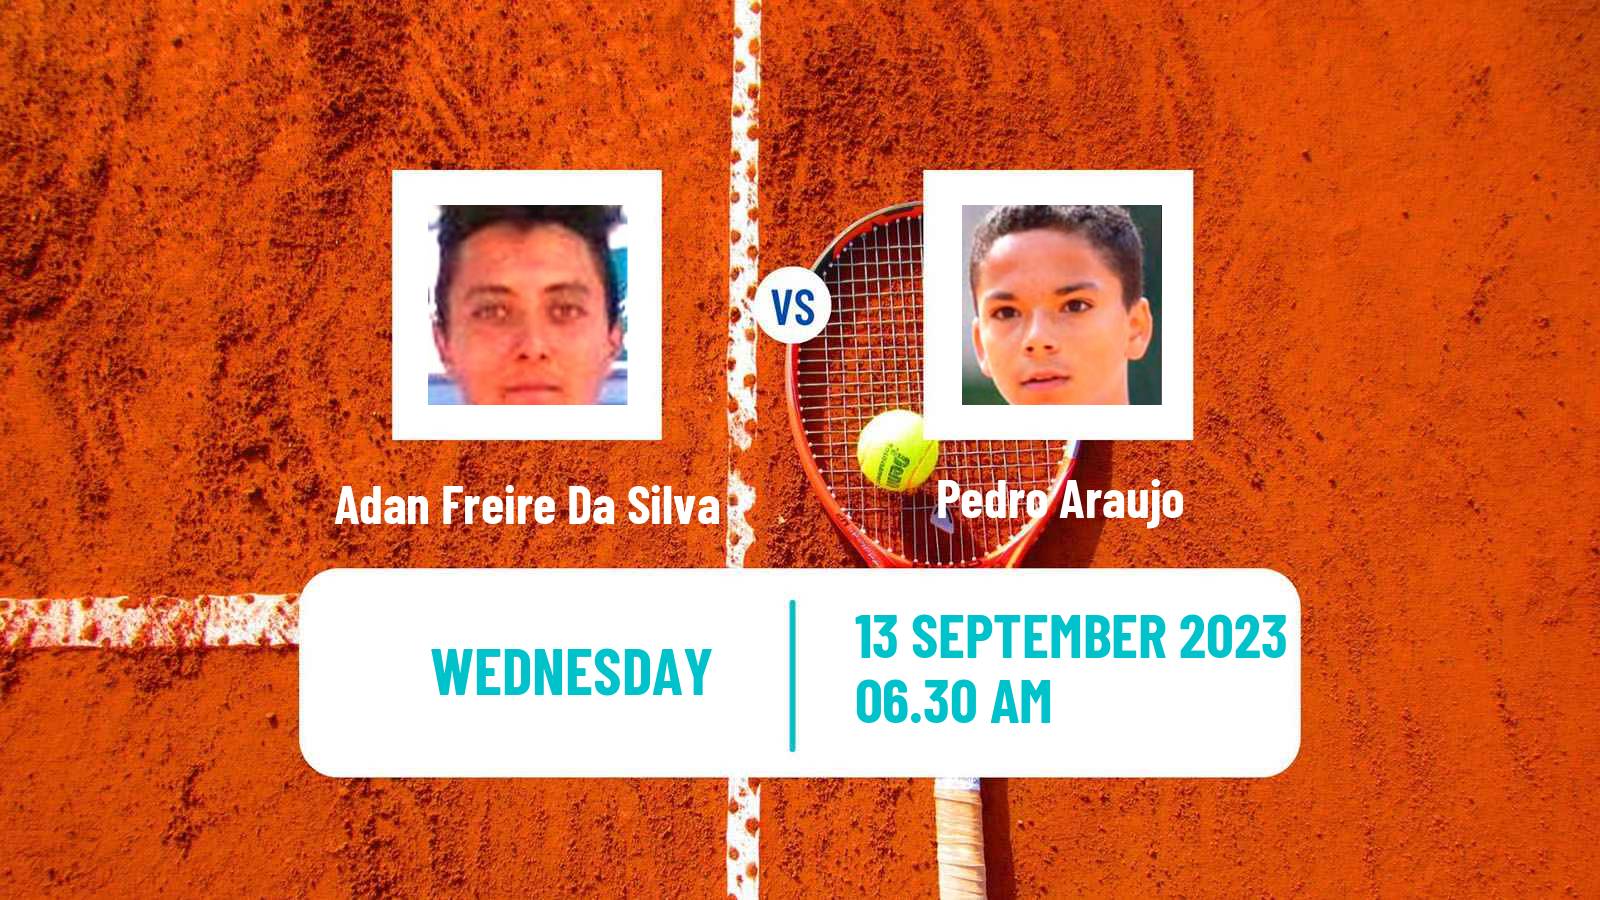 Tennis ITF M25 Sintra 3 Men Adan Freire Da Silva - Pedro Araujo